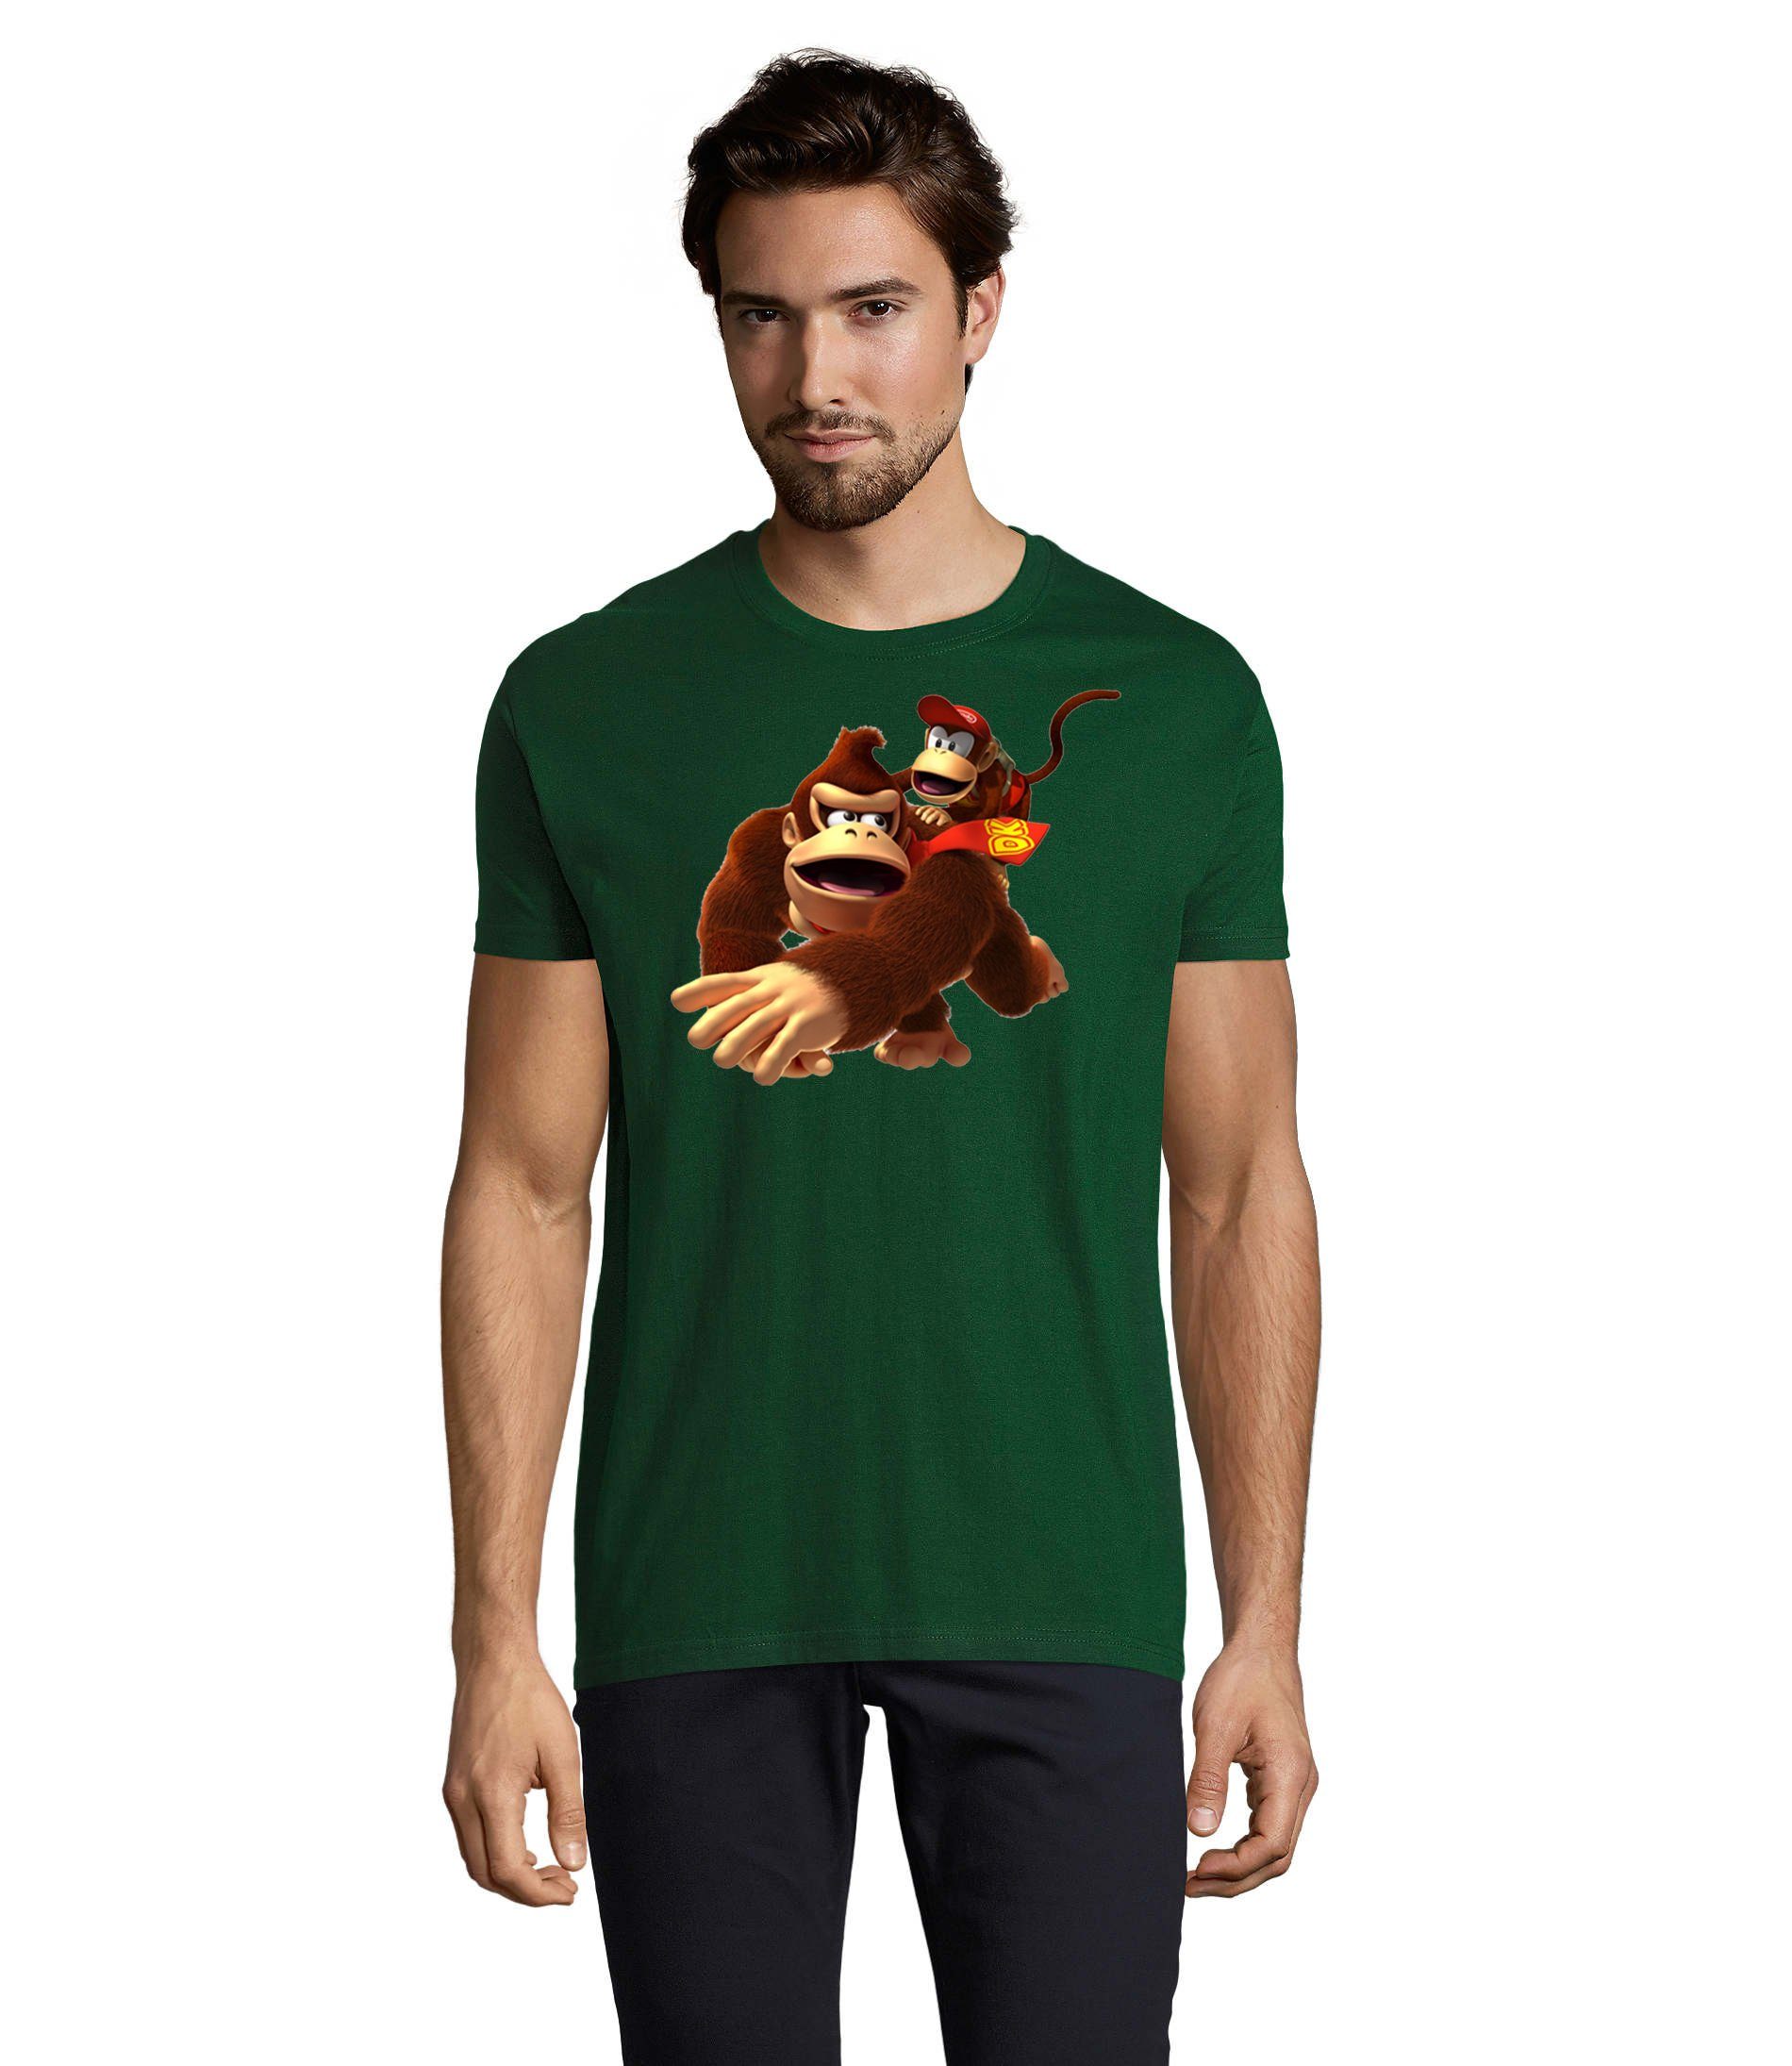 Blondie & Brownie T-Shirt Herren Donkey Diddy Kong Spiele Konsole Nerd Nintendo Flaschengrün | T-Shirts